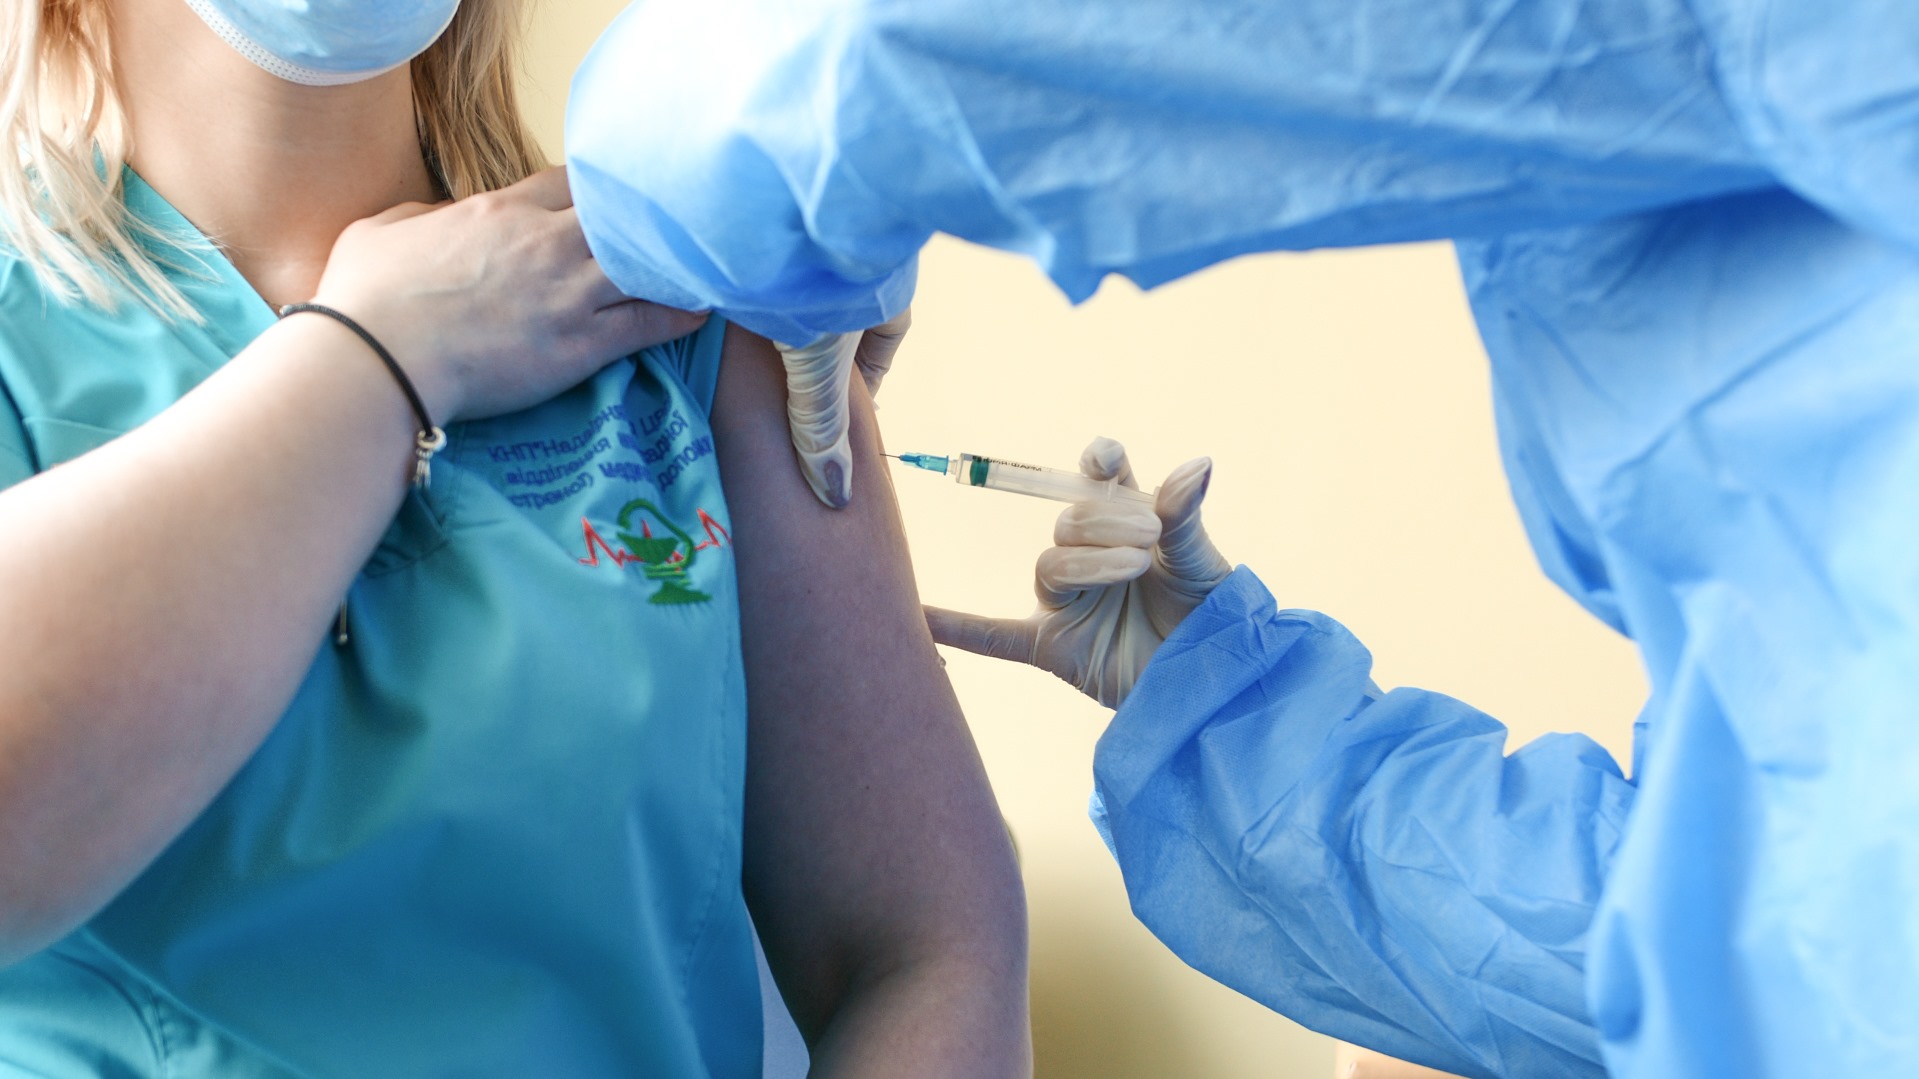 Ще 435 прикарпатців отримали вакцину від коронавірусу